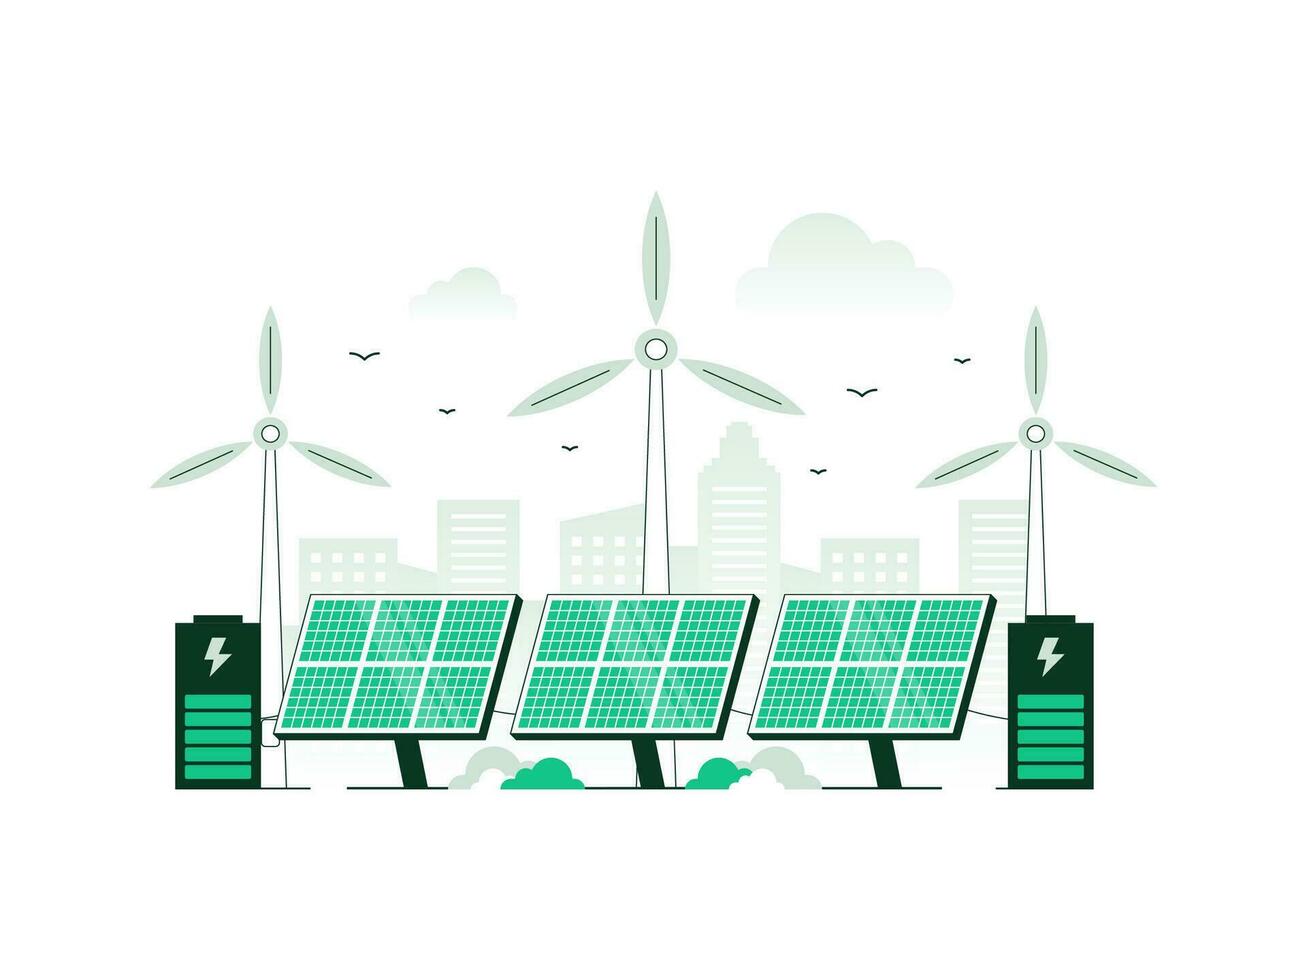 hernieuwbare energiebronnen energie en hernieuwbaar elektrisch macht station met zonne- panelen en wind turbines. schoon elektrisch energie van hernieuwbaar bronnen zon en wind. vector illustratie met minimalistische kleur.